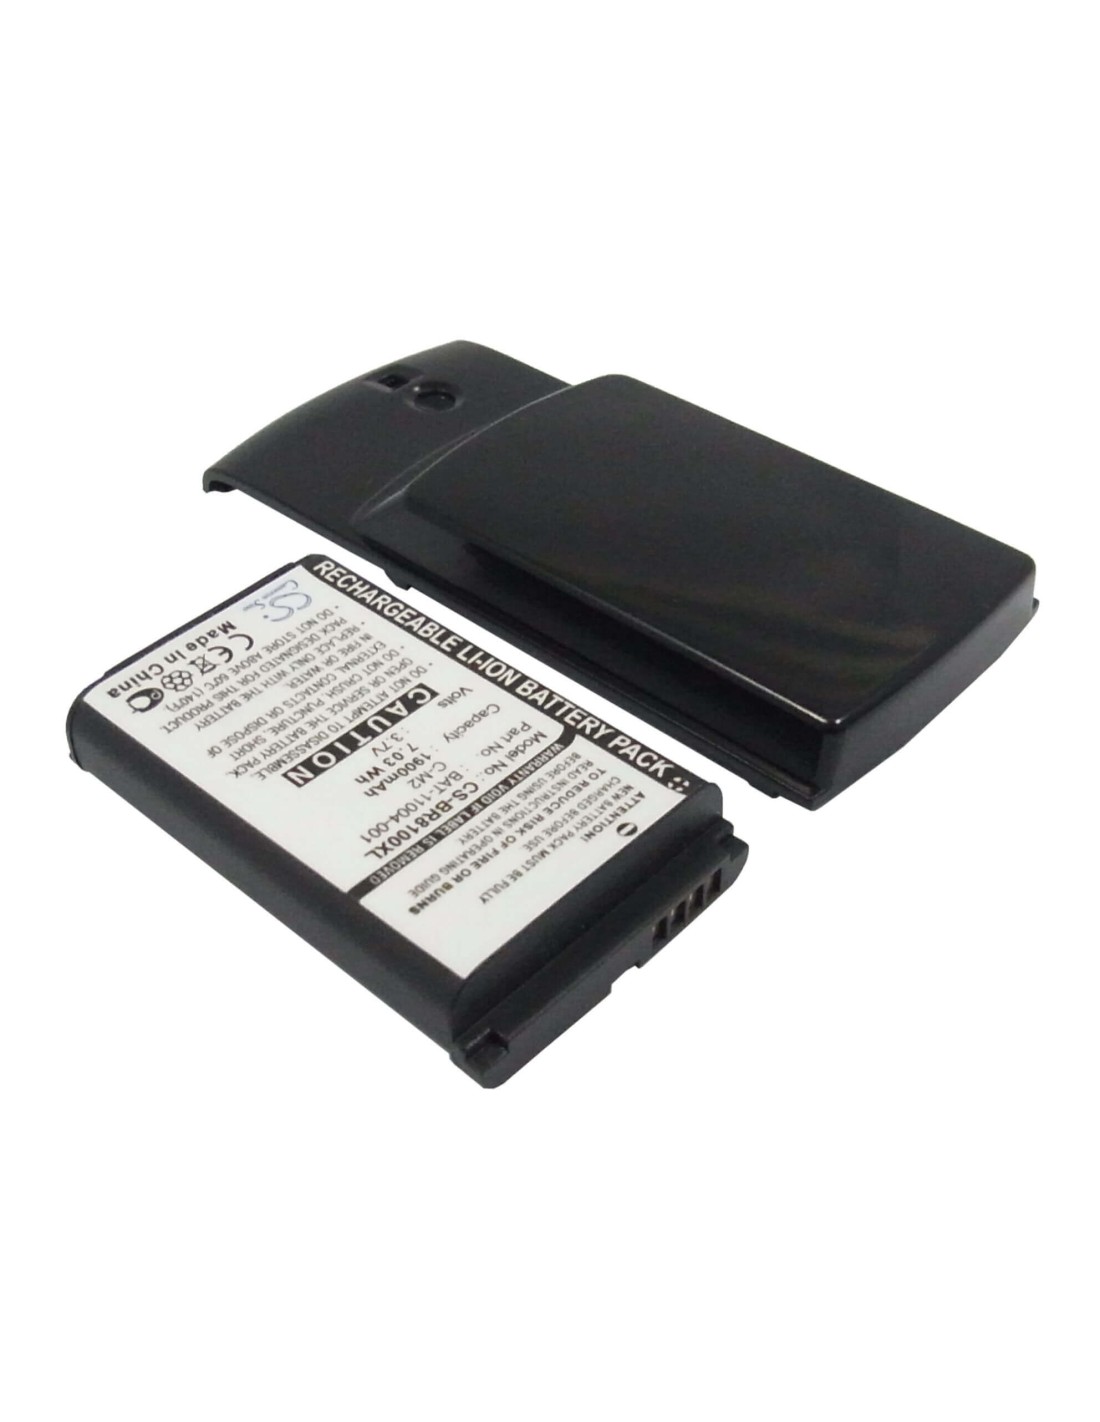 Battery for Blackberry 8100, 8100c, 8100r 3.7V, 1900mAh - 7.03Wh